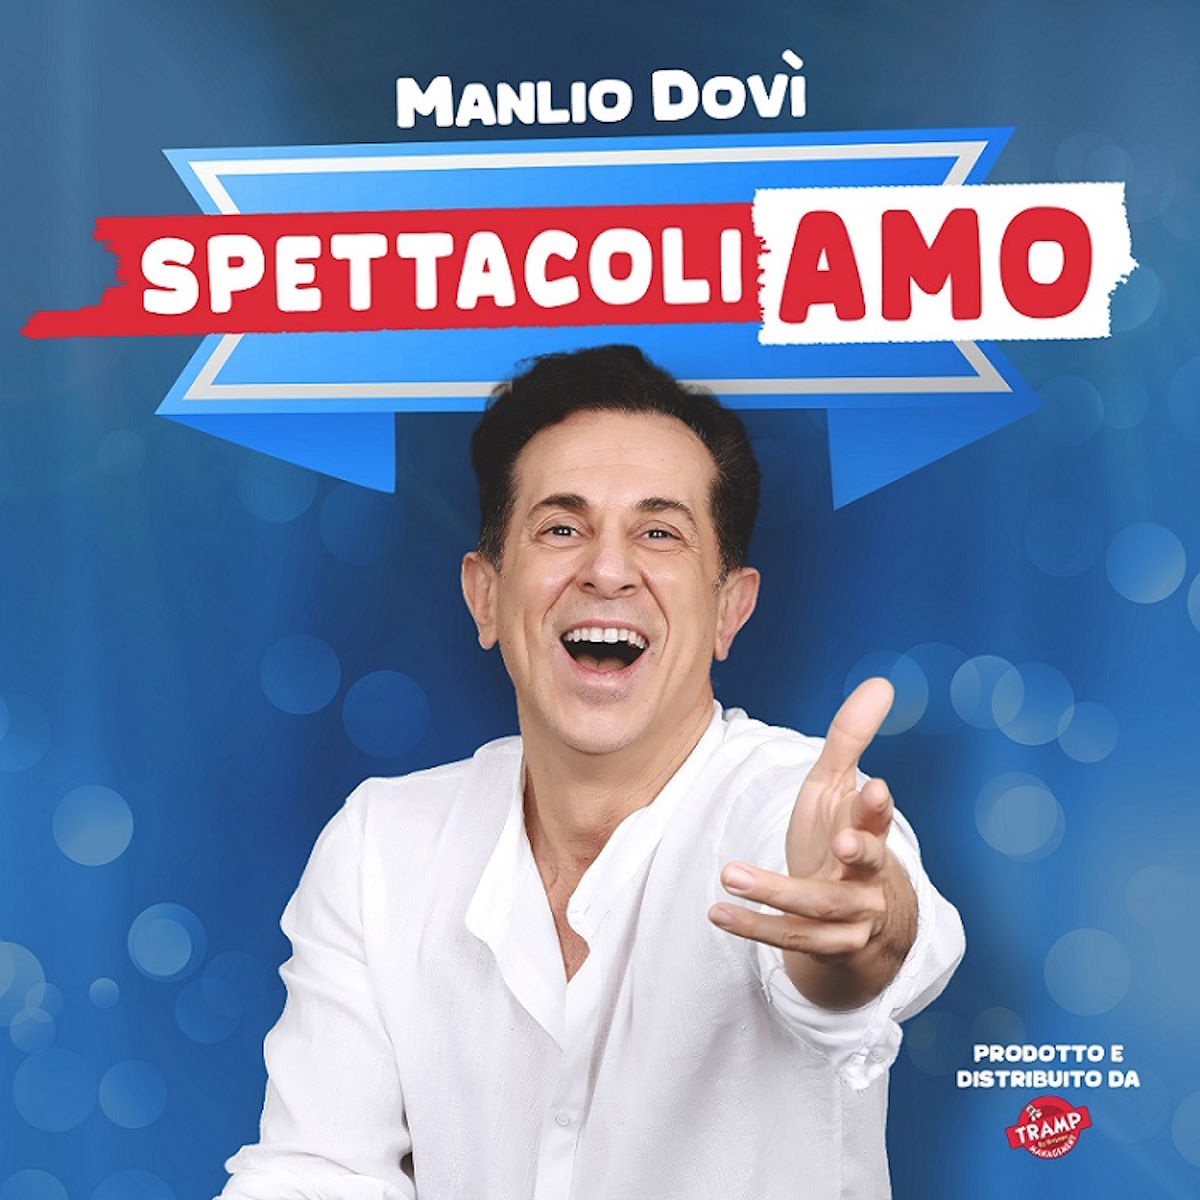 Palermo - “SpettacoliAMO”, lo show di Manlio Dovì